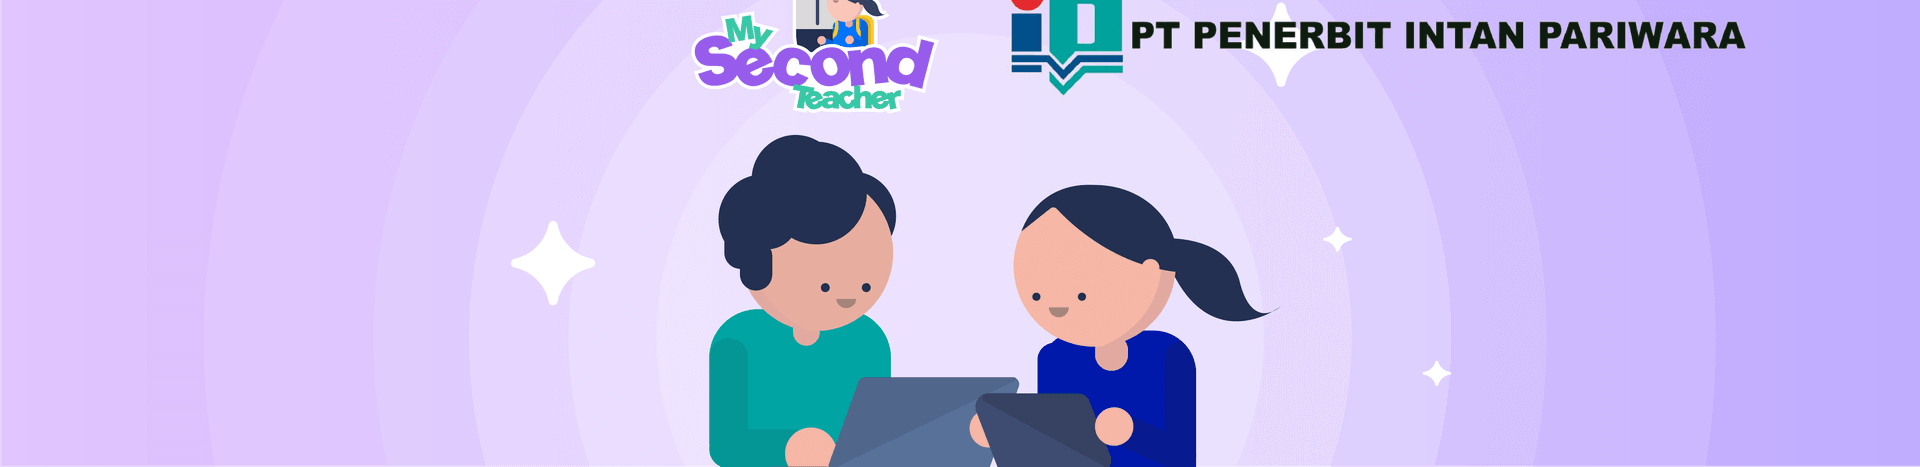 Advanced Pedagogy Announces Partnership with PT Penerbit Intan Pariwara